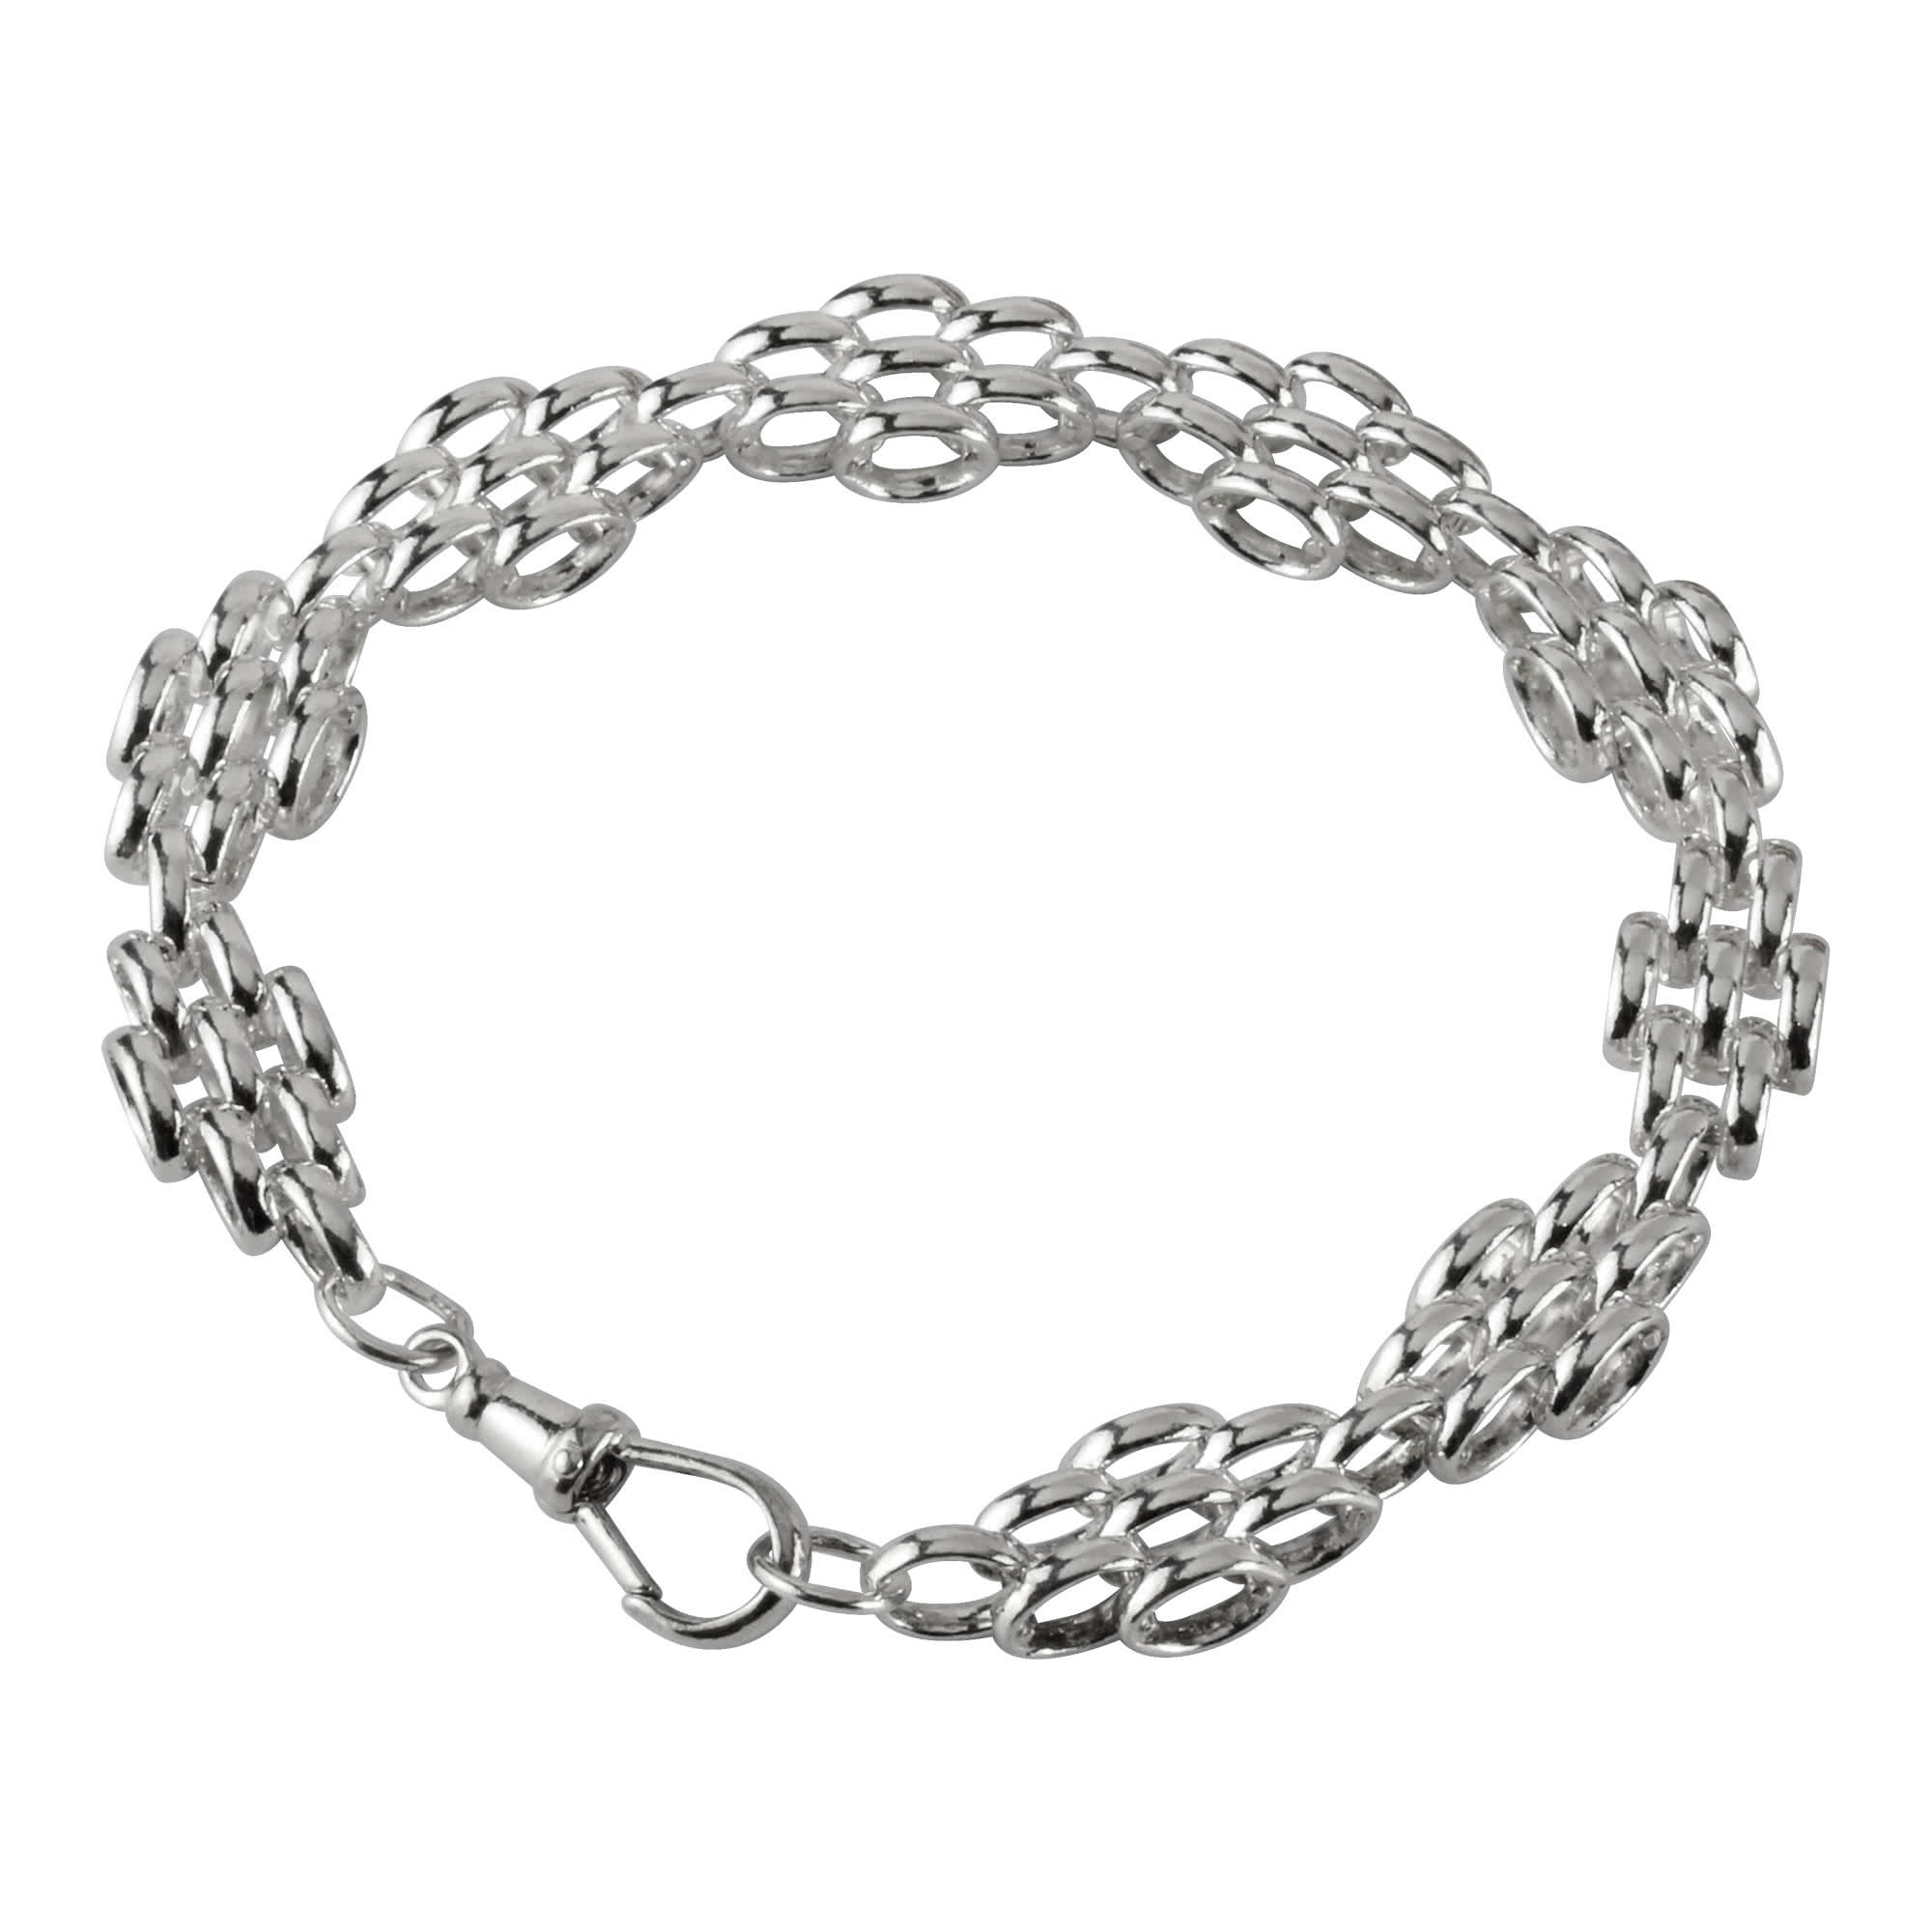 Oval Link Silver Bracelet for Women